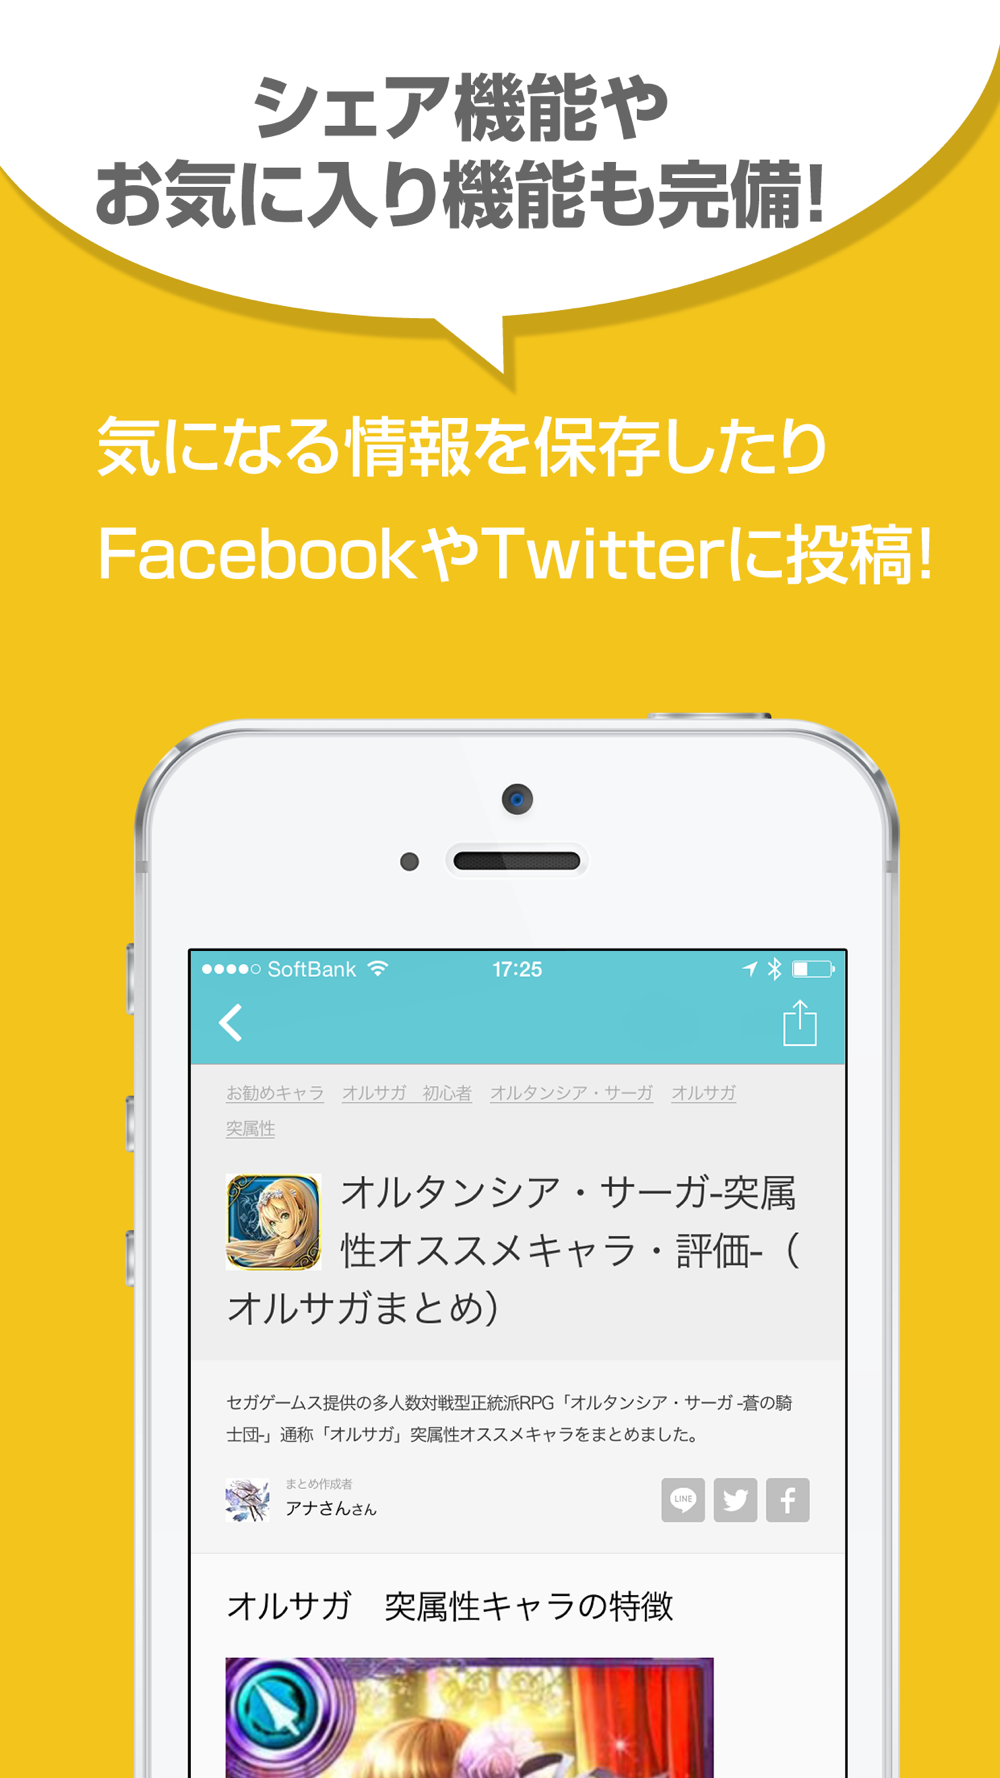 ニュース まとめ For オルサガ オルタンシア サーガ 蒼の騎士団 Free Download App For Iphone Steprimo Com